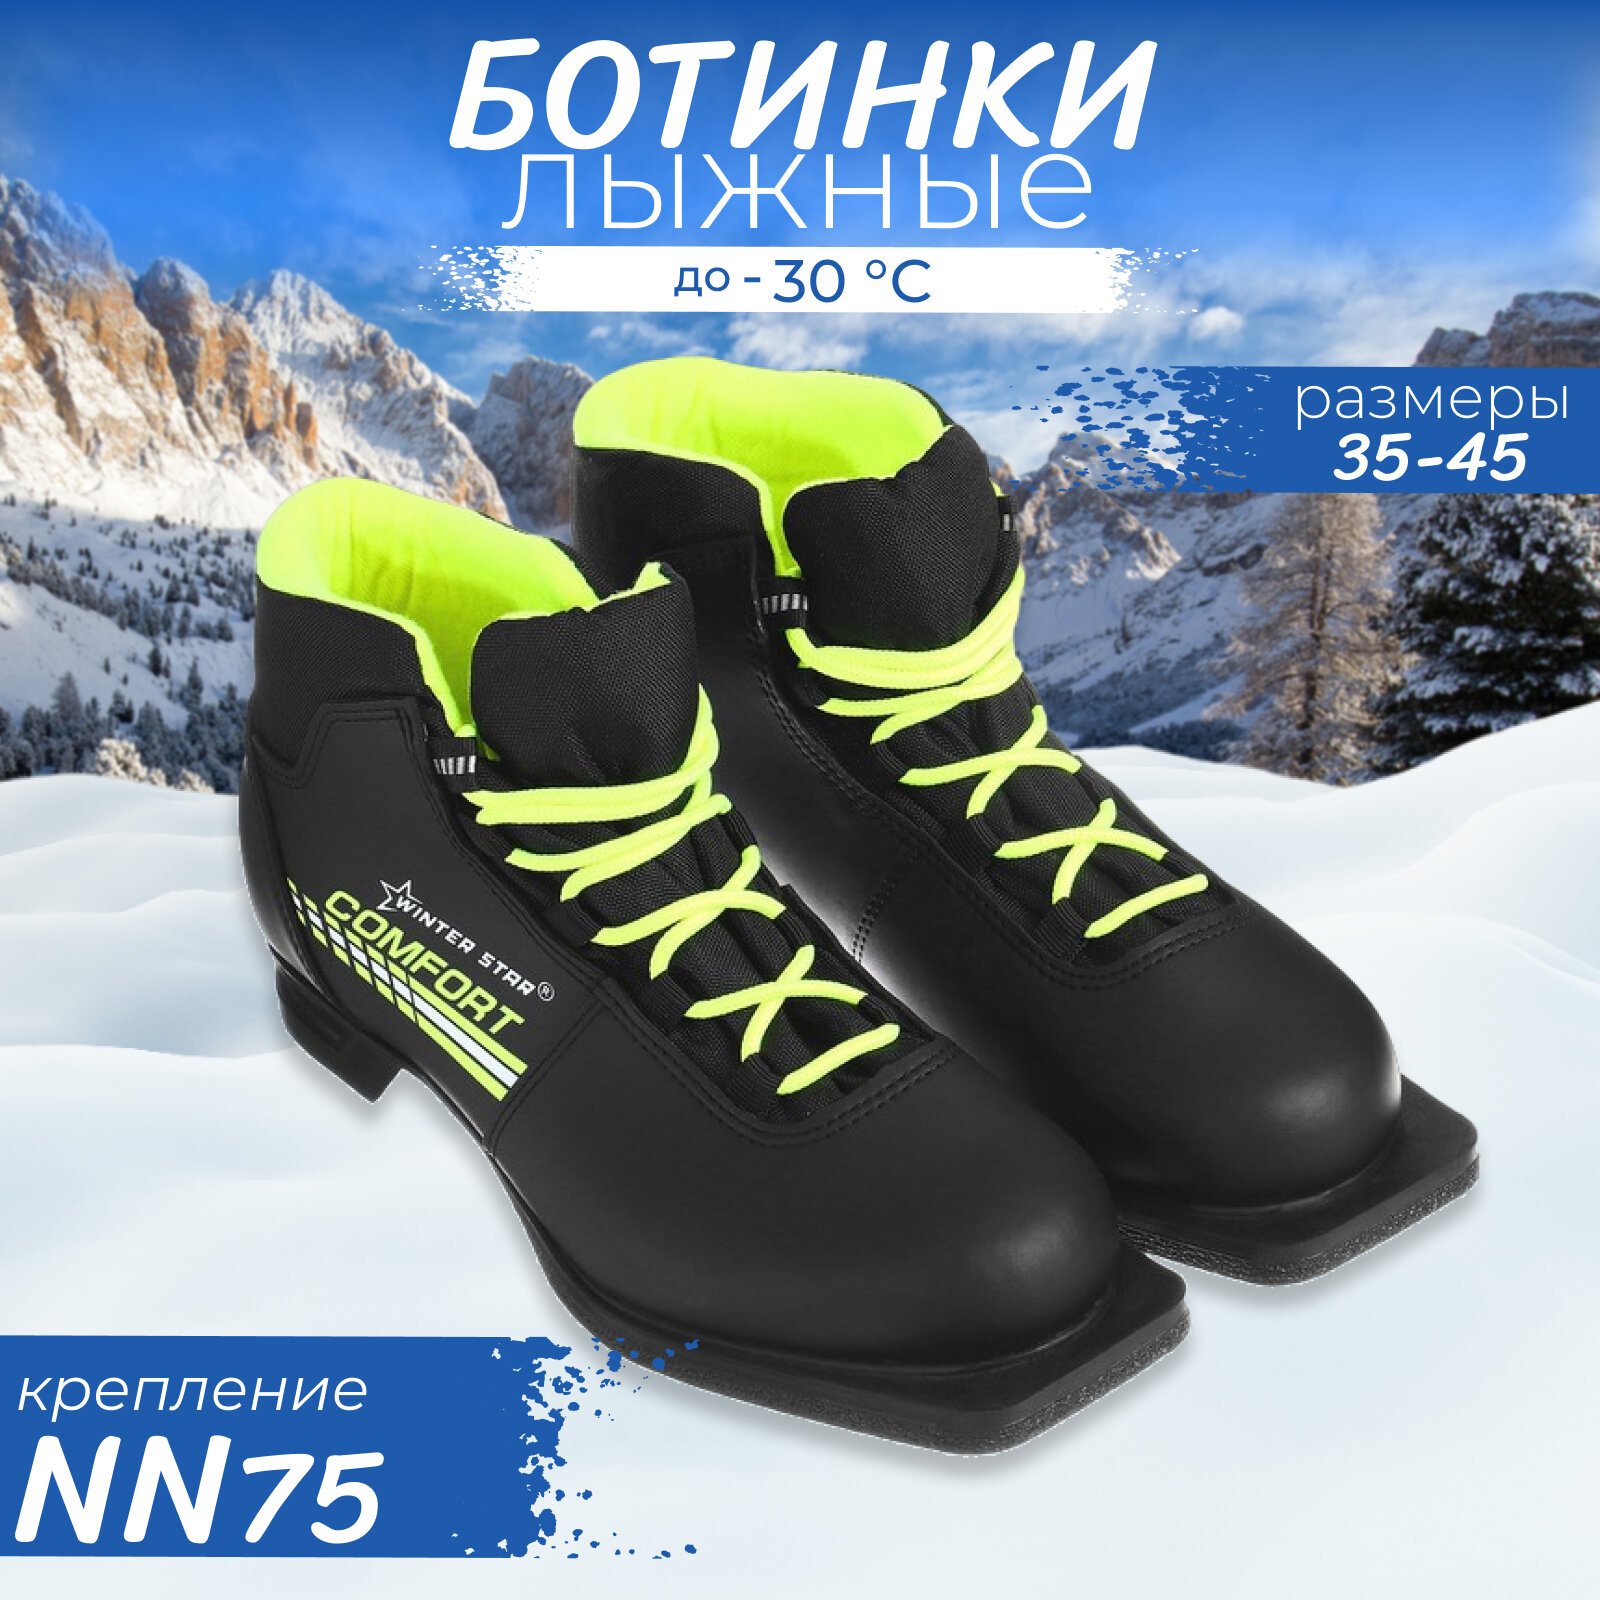 Ботинки лыжные Winter Star comfort, NN75, размер 39, цвет чёрный, салатовый